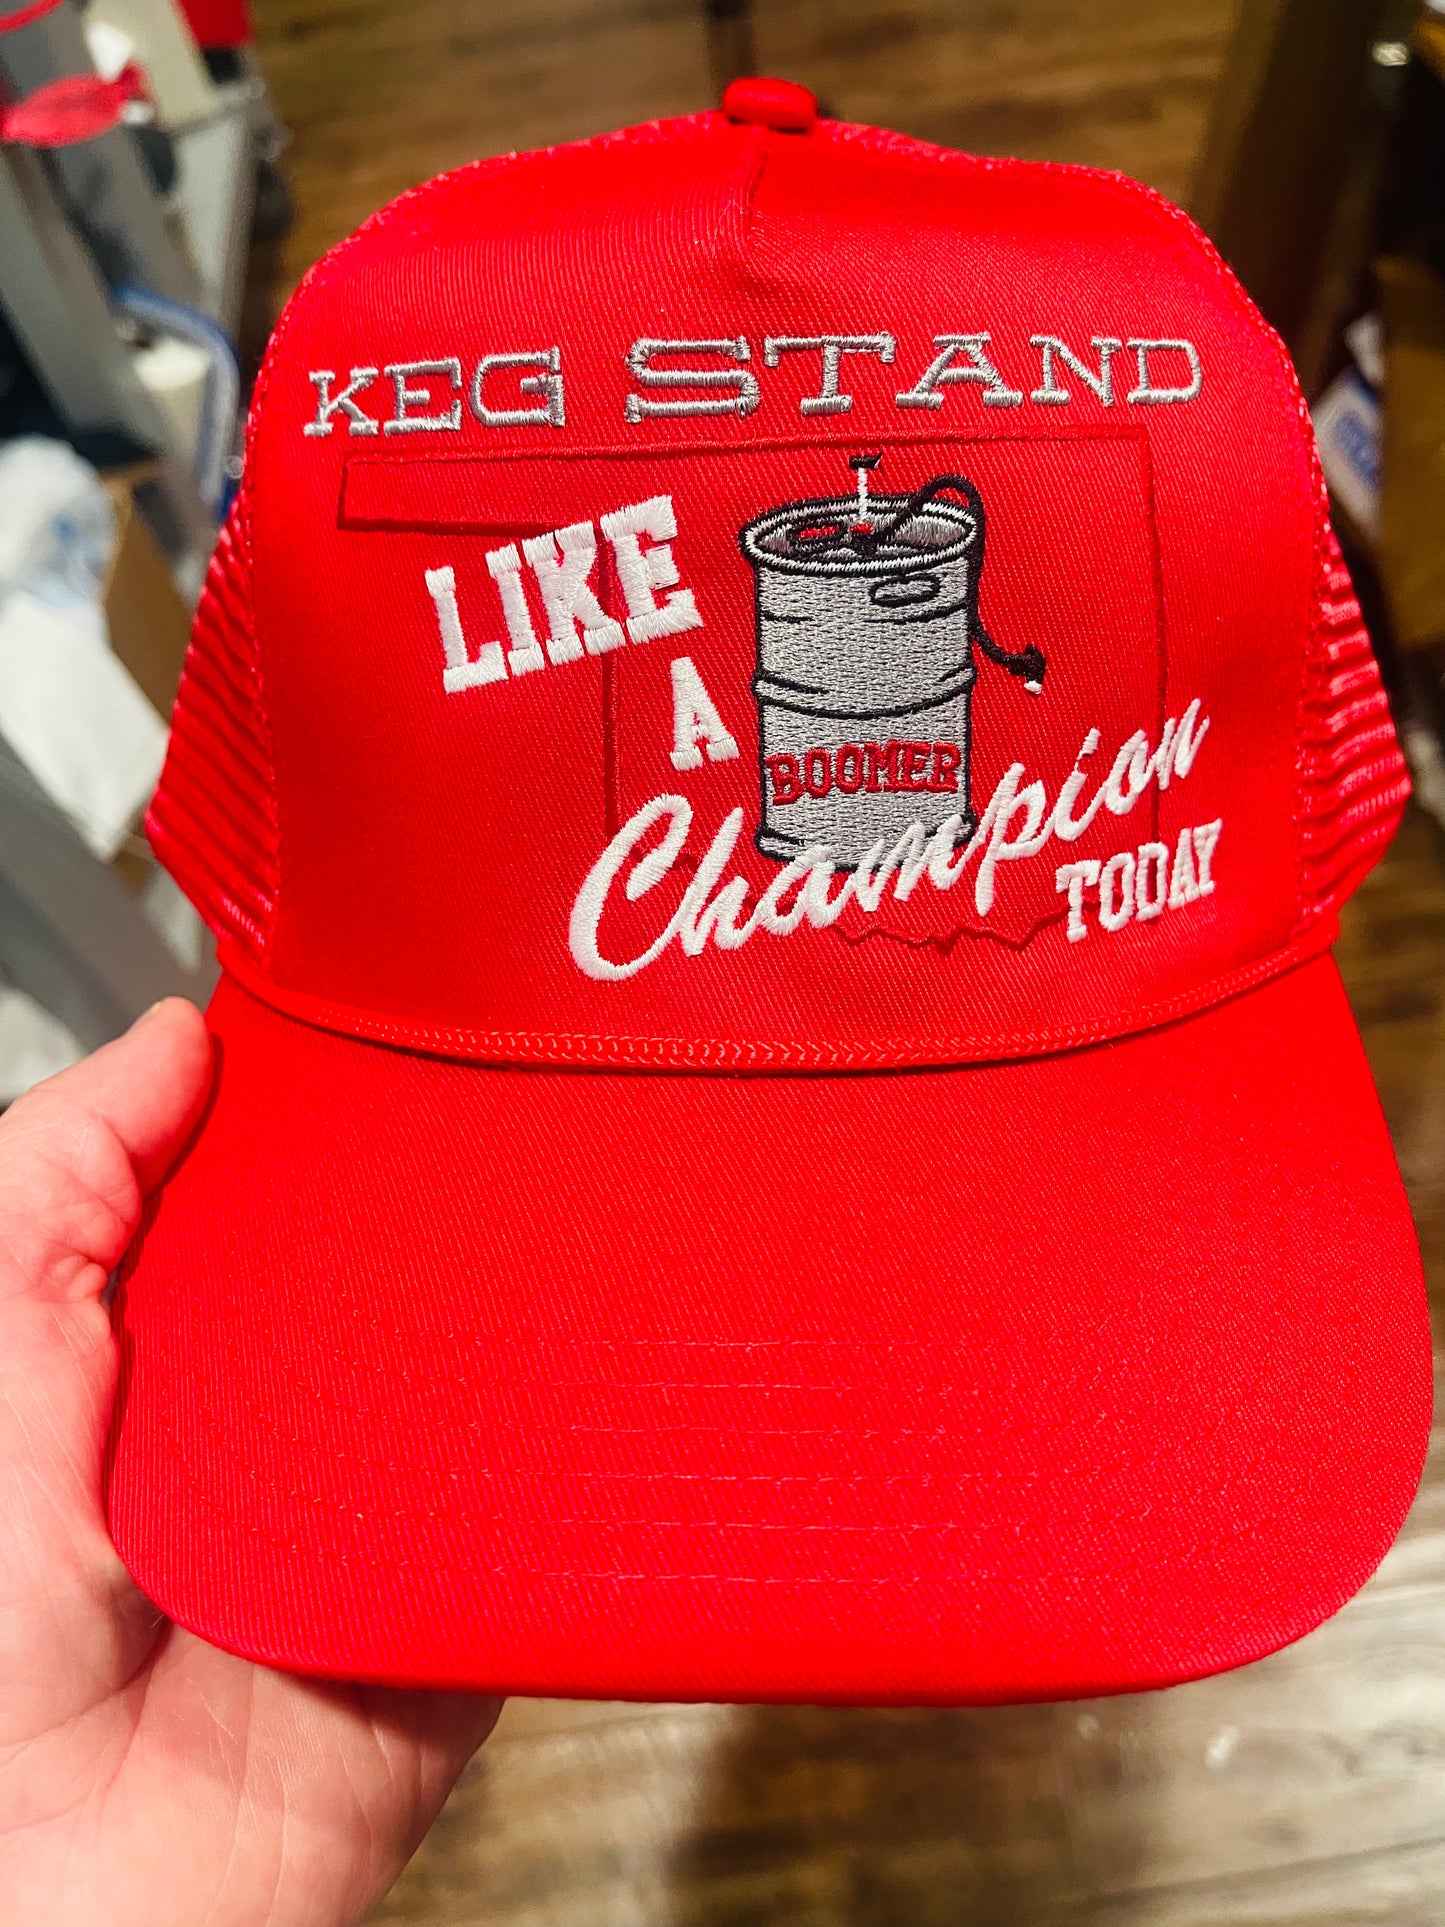 Keg stand like a champ Boomer trucker hat